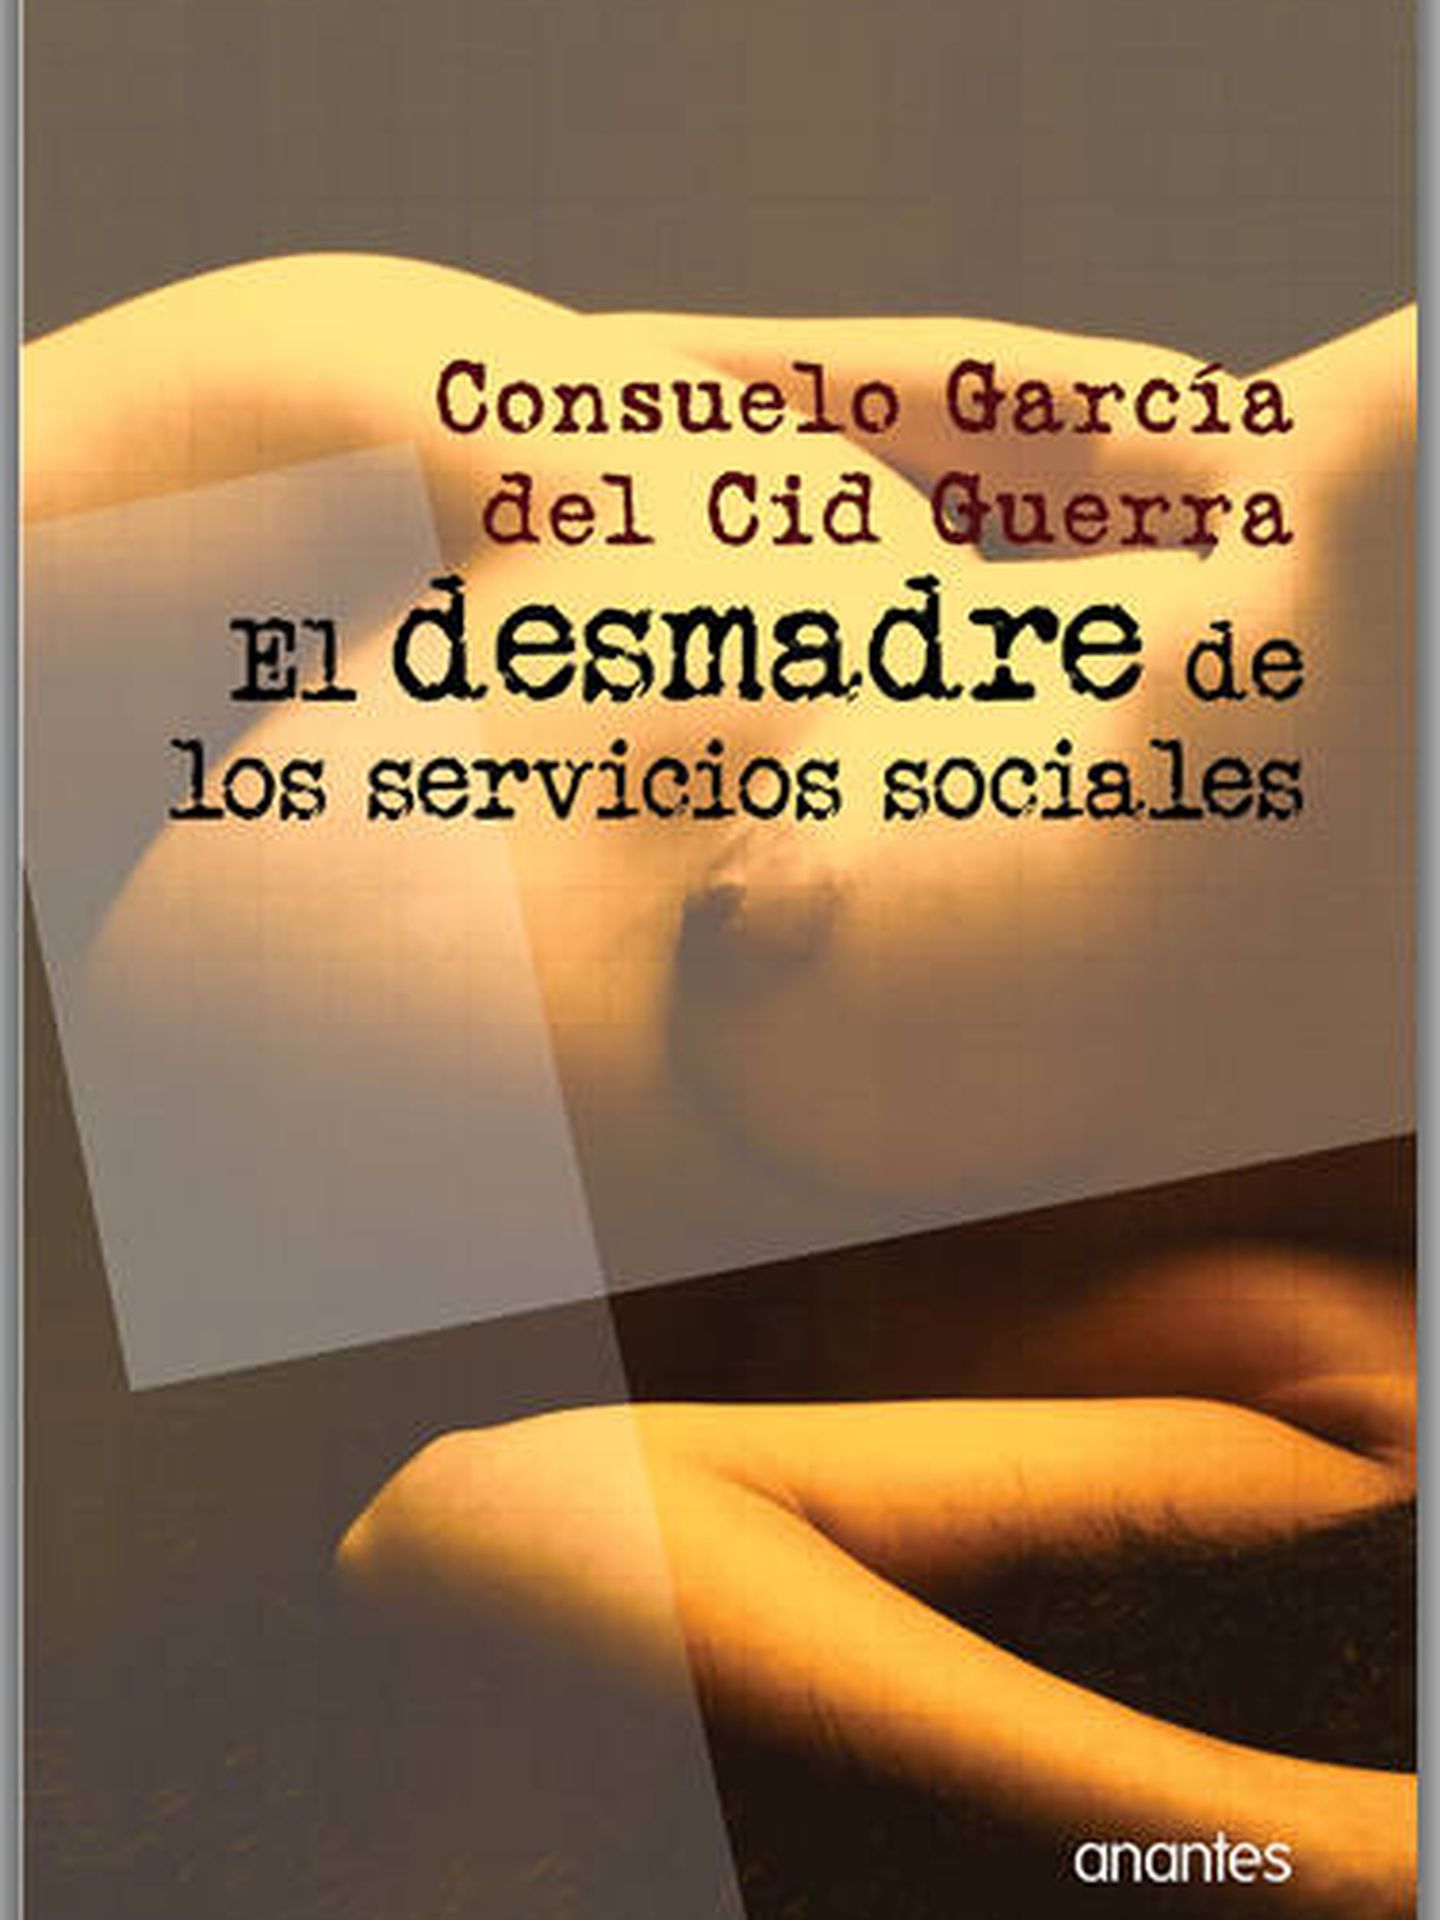 El libro polémico: 'El desmadre de los servicios sociales'